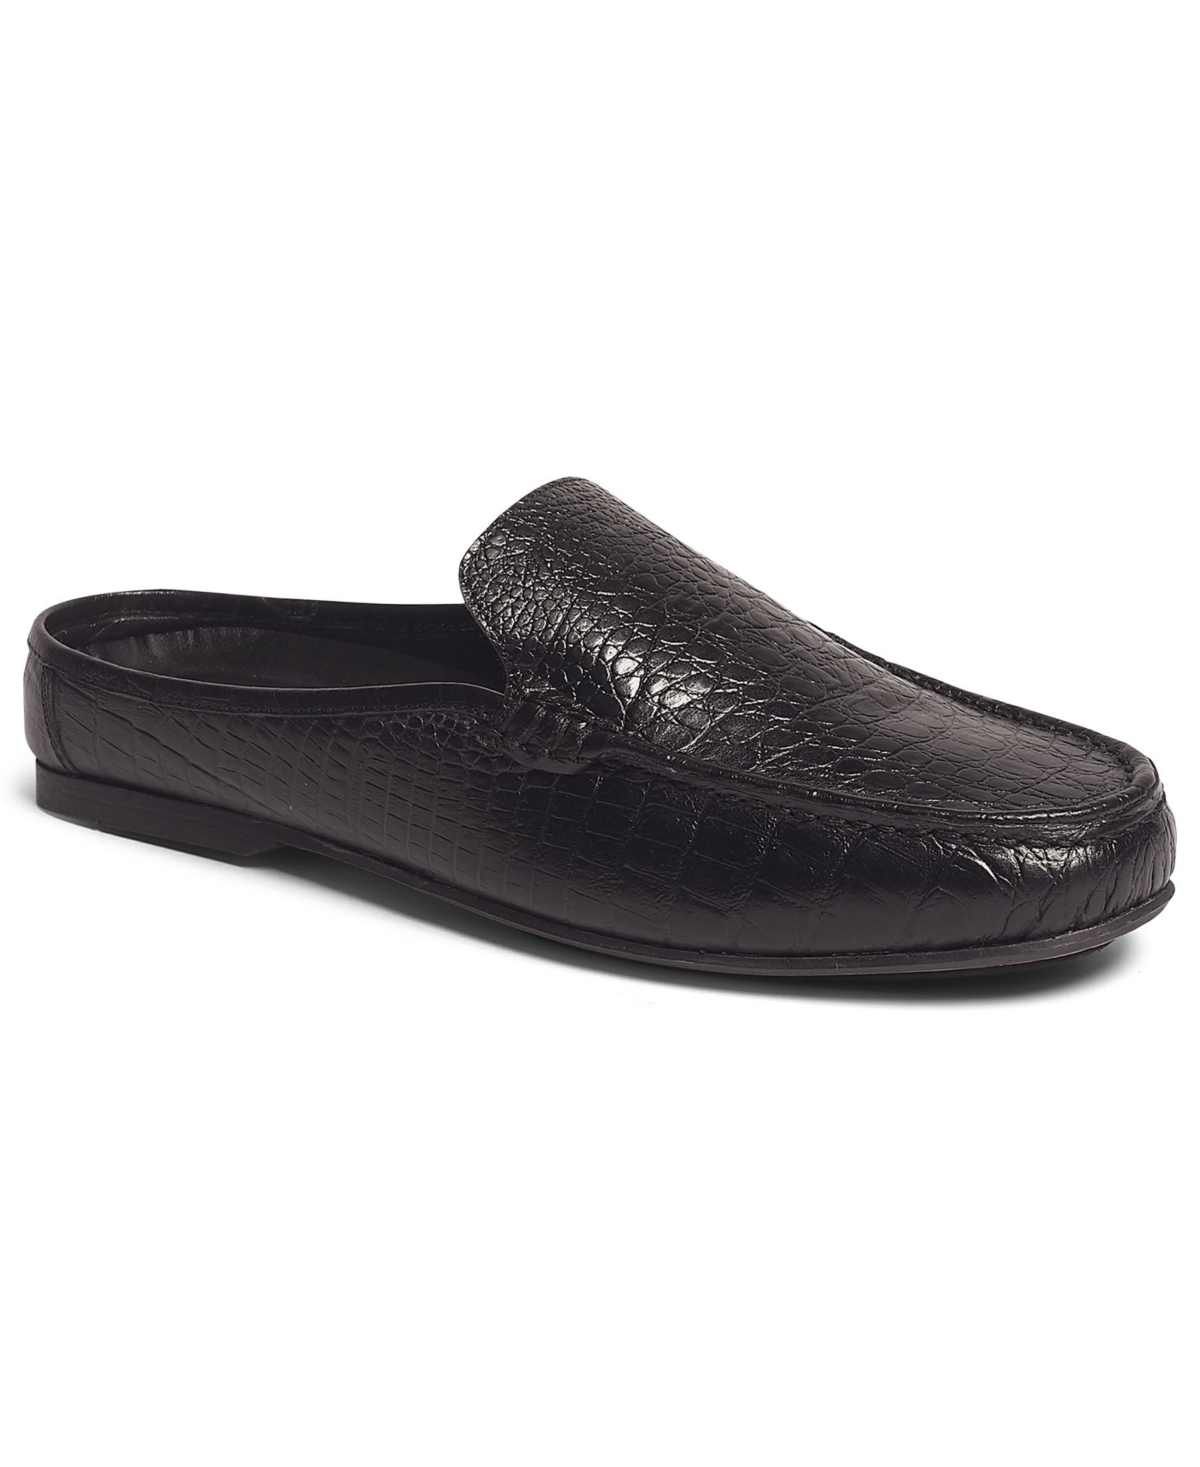 Men's Cronos Mule Slip-On Shoes - Black